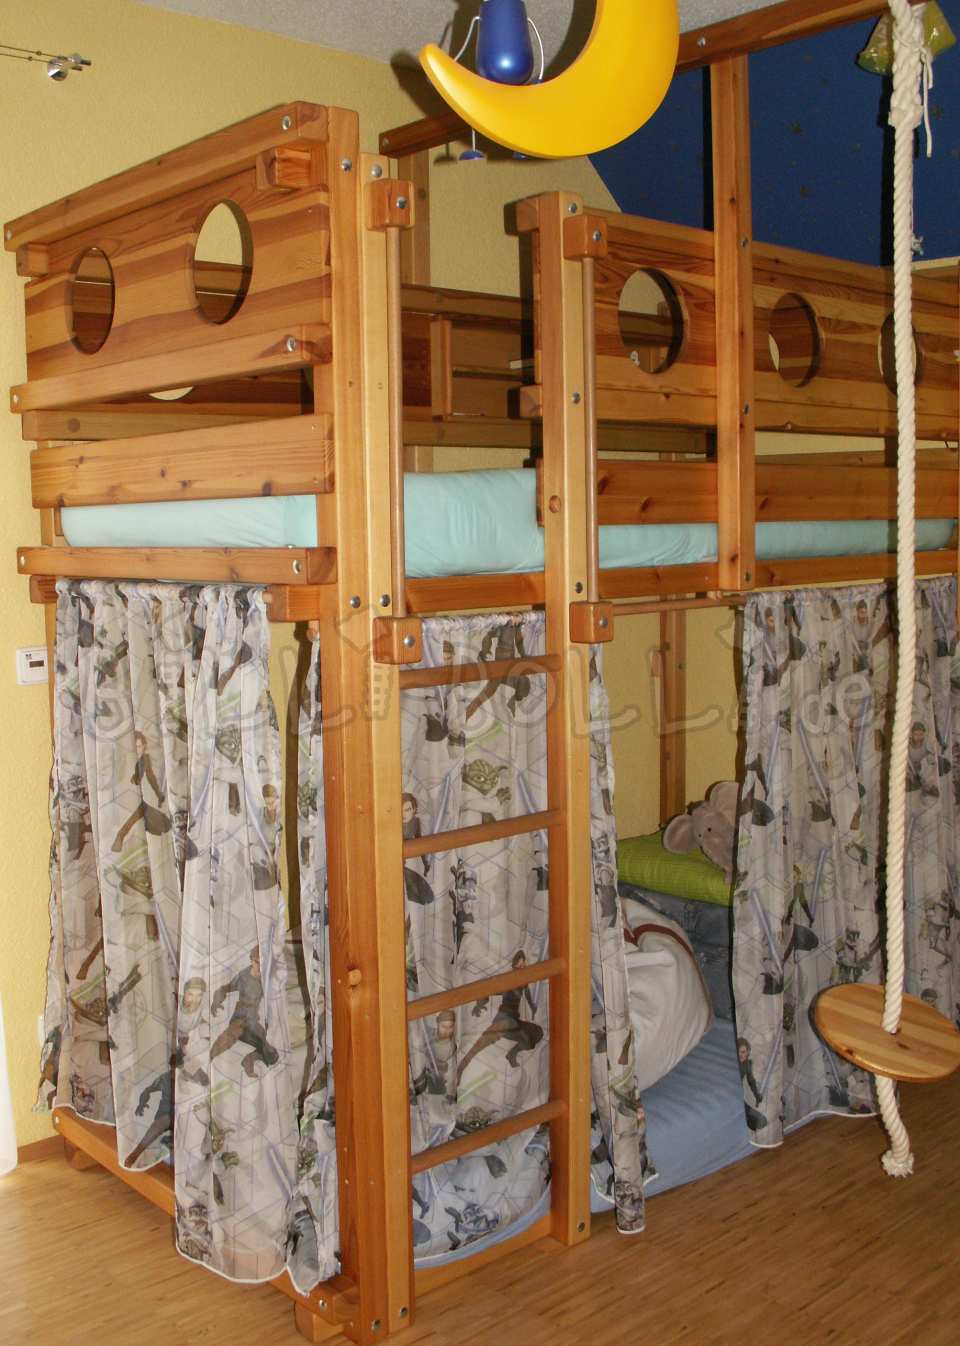 Raste krevet u potkrovlju, 90 x 200 cm, nauljeni bor (Kategorija: Korišten krevet u potkrovlju)